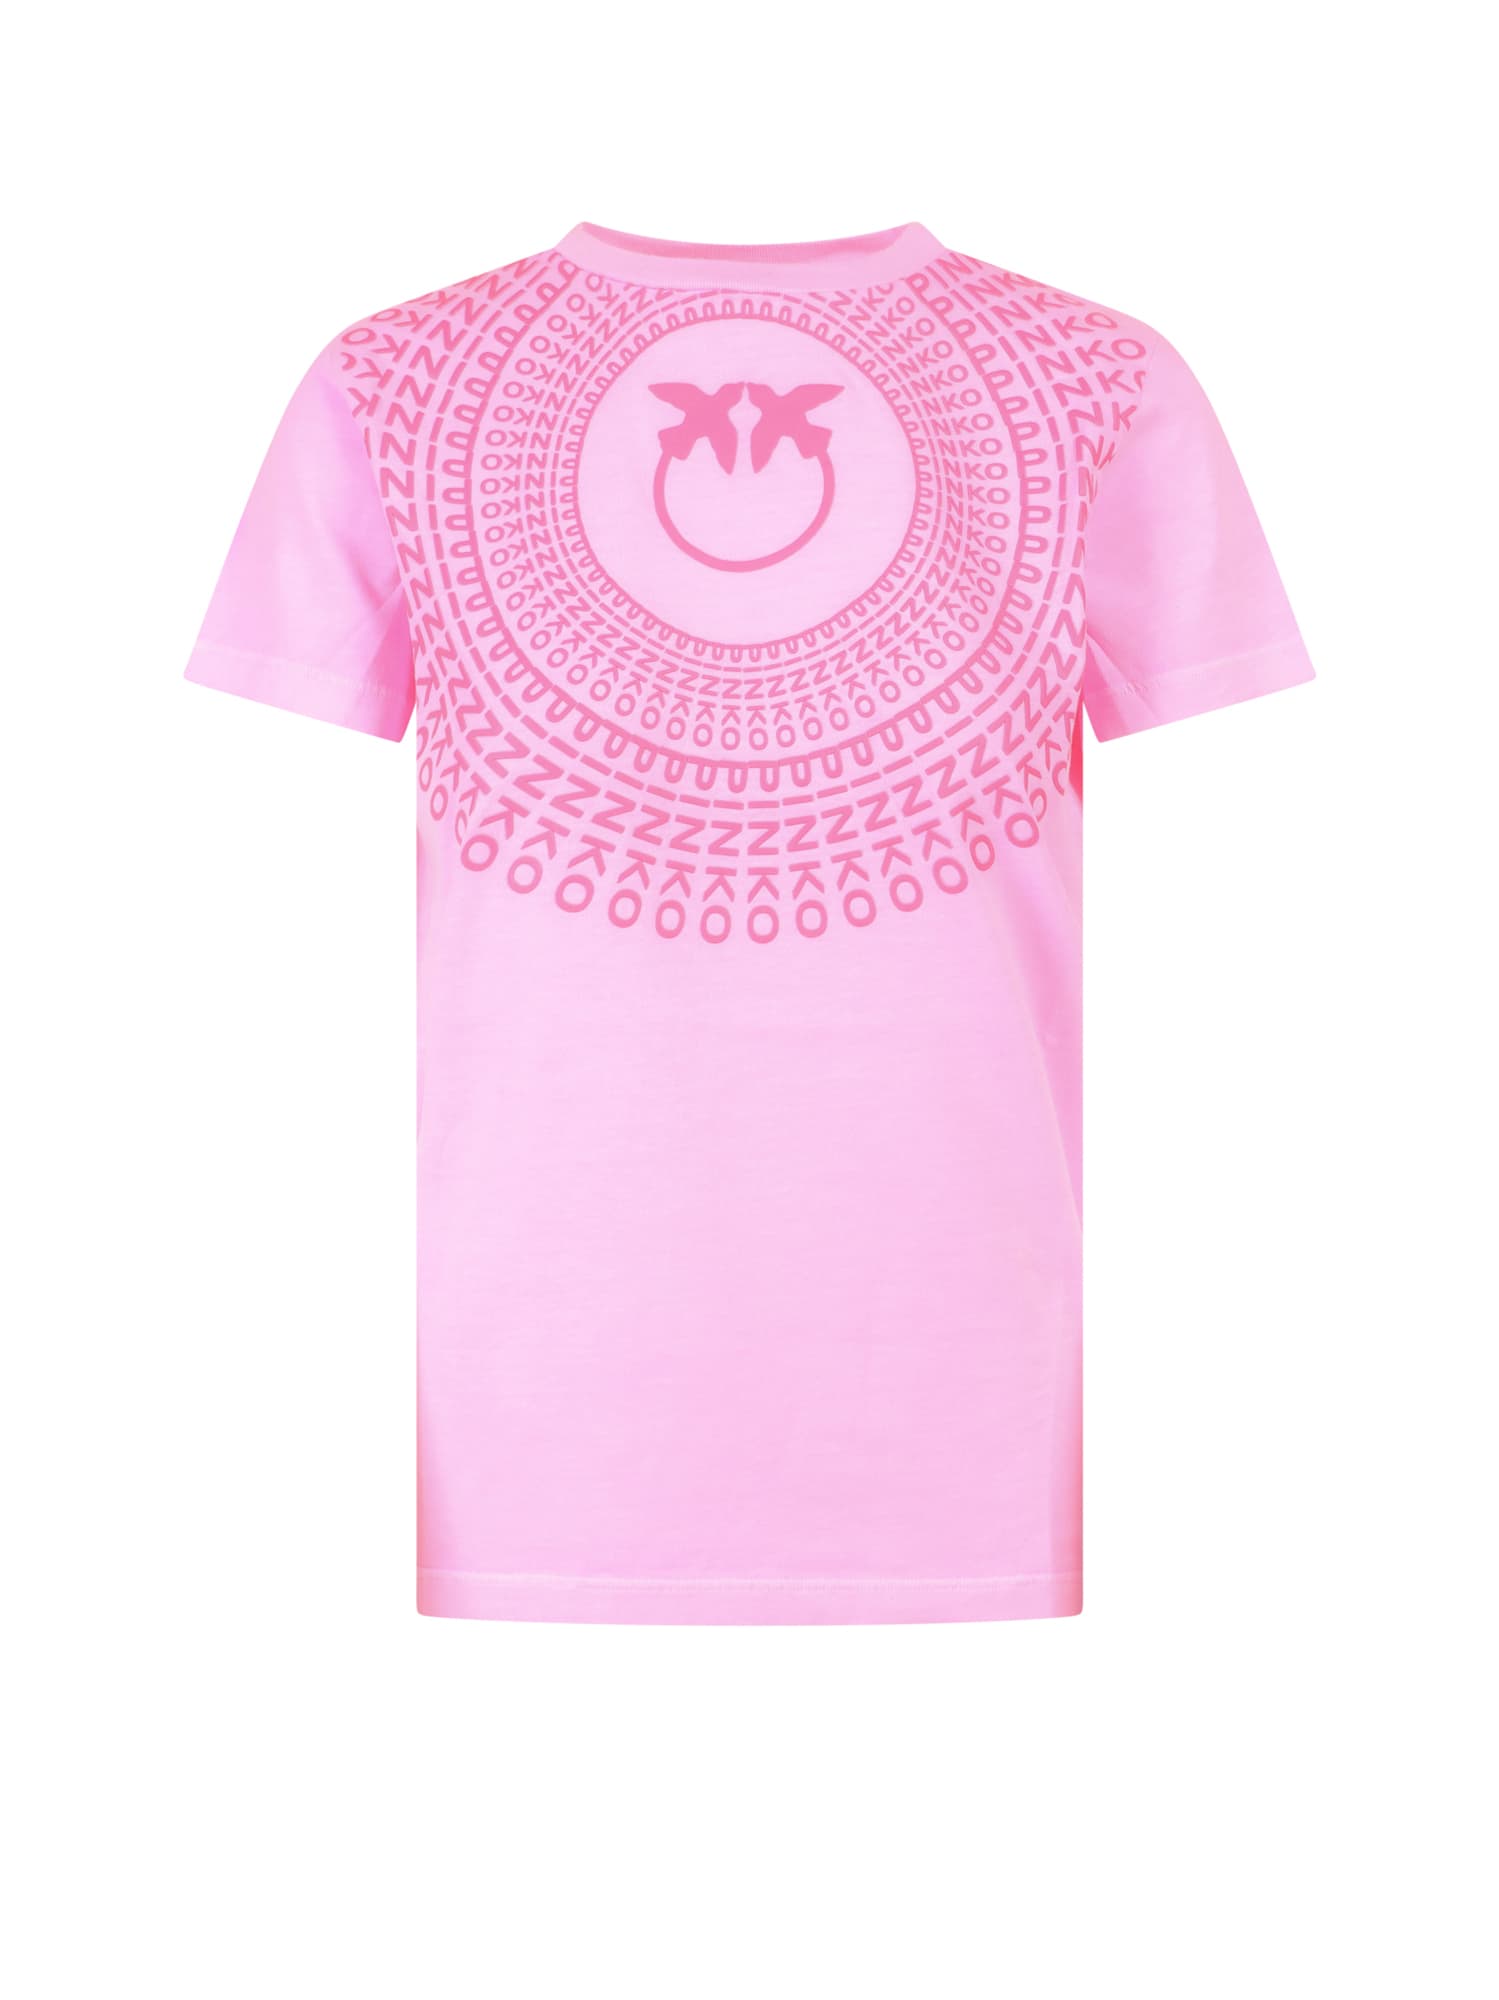 Pinko T-shirt